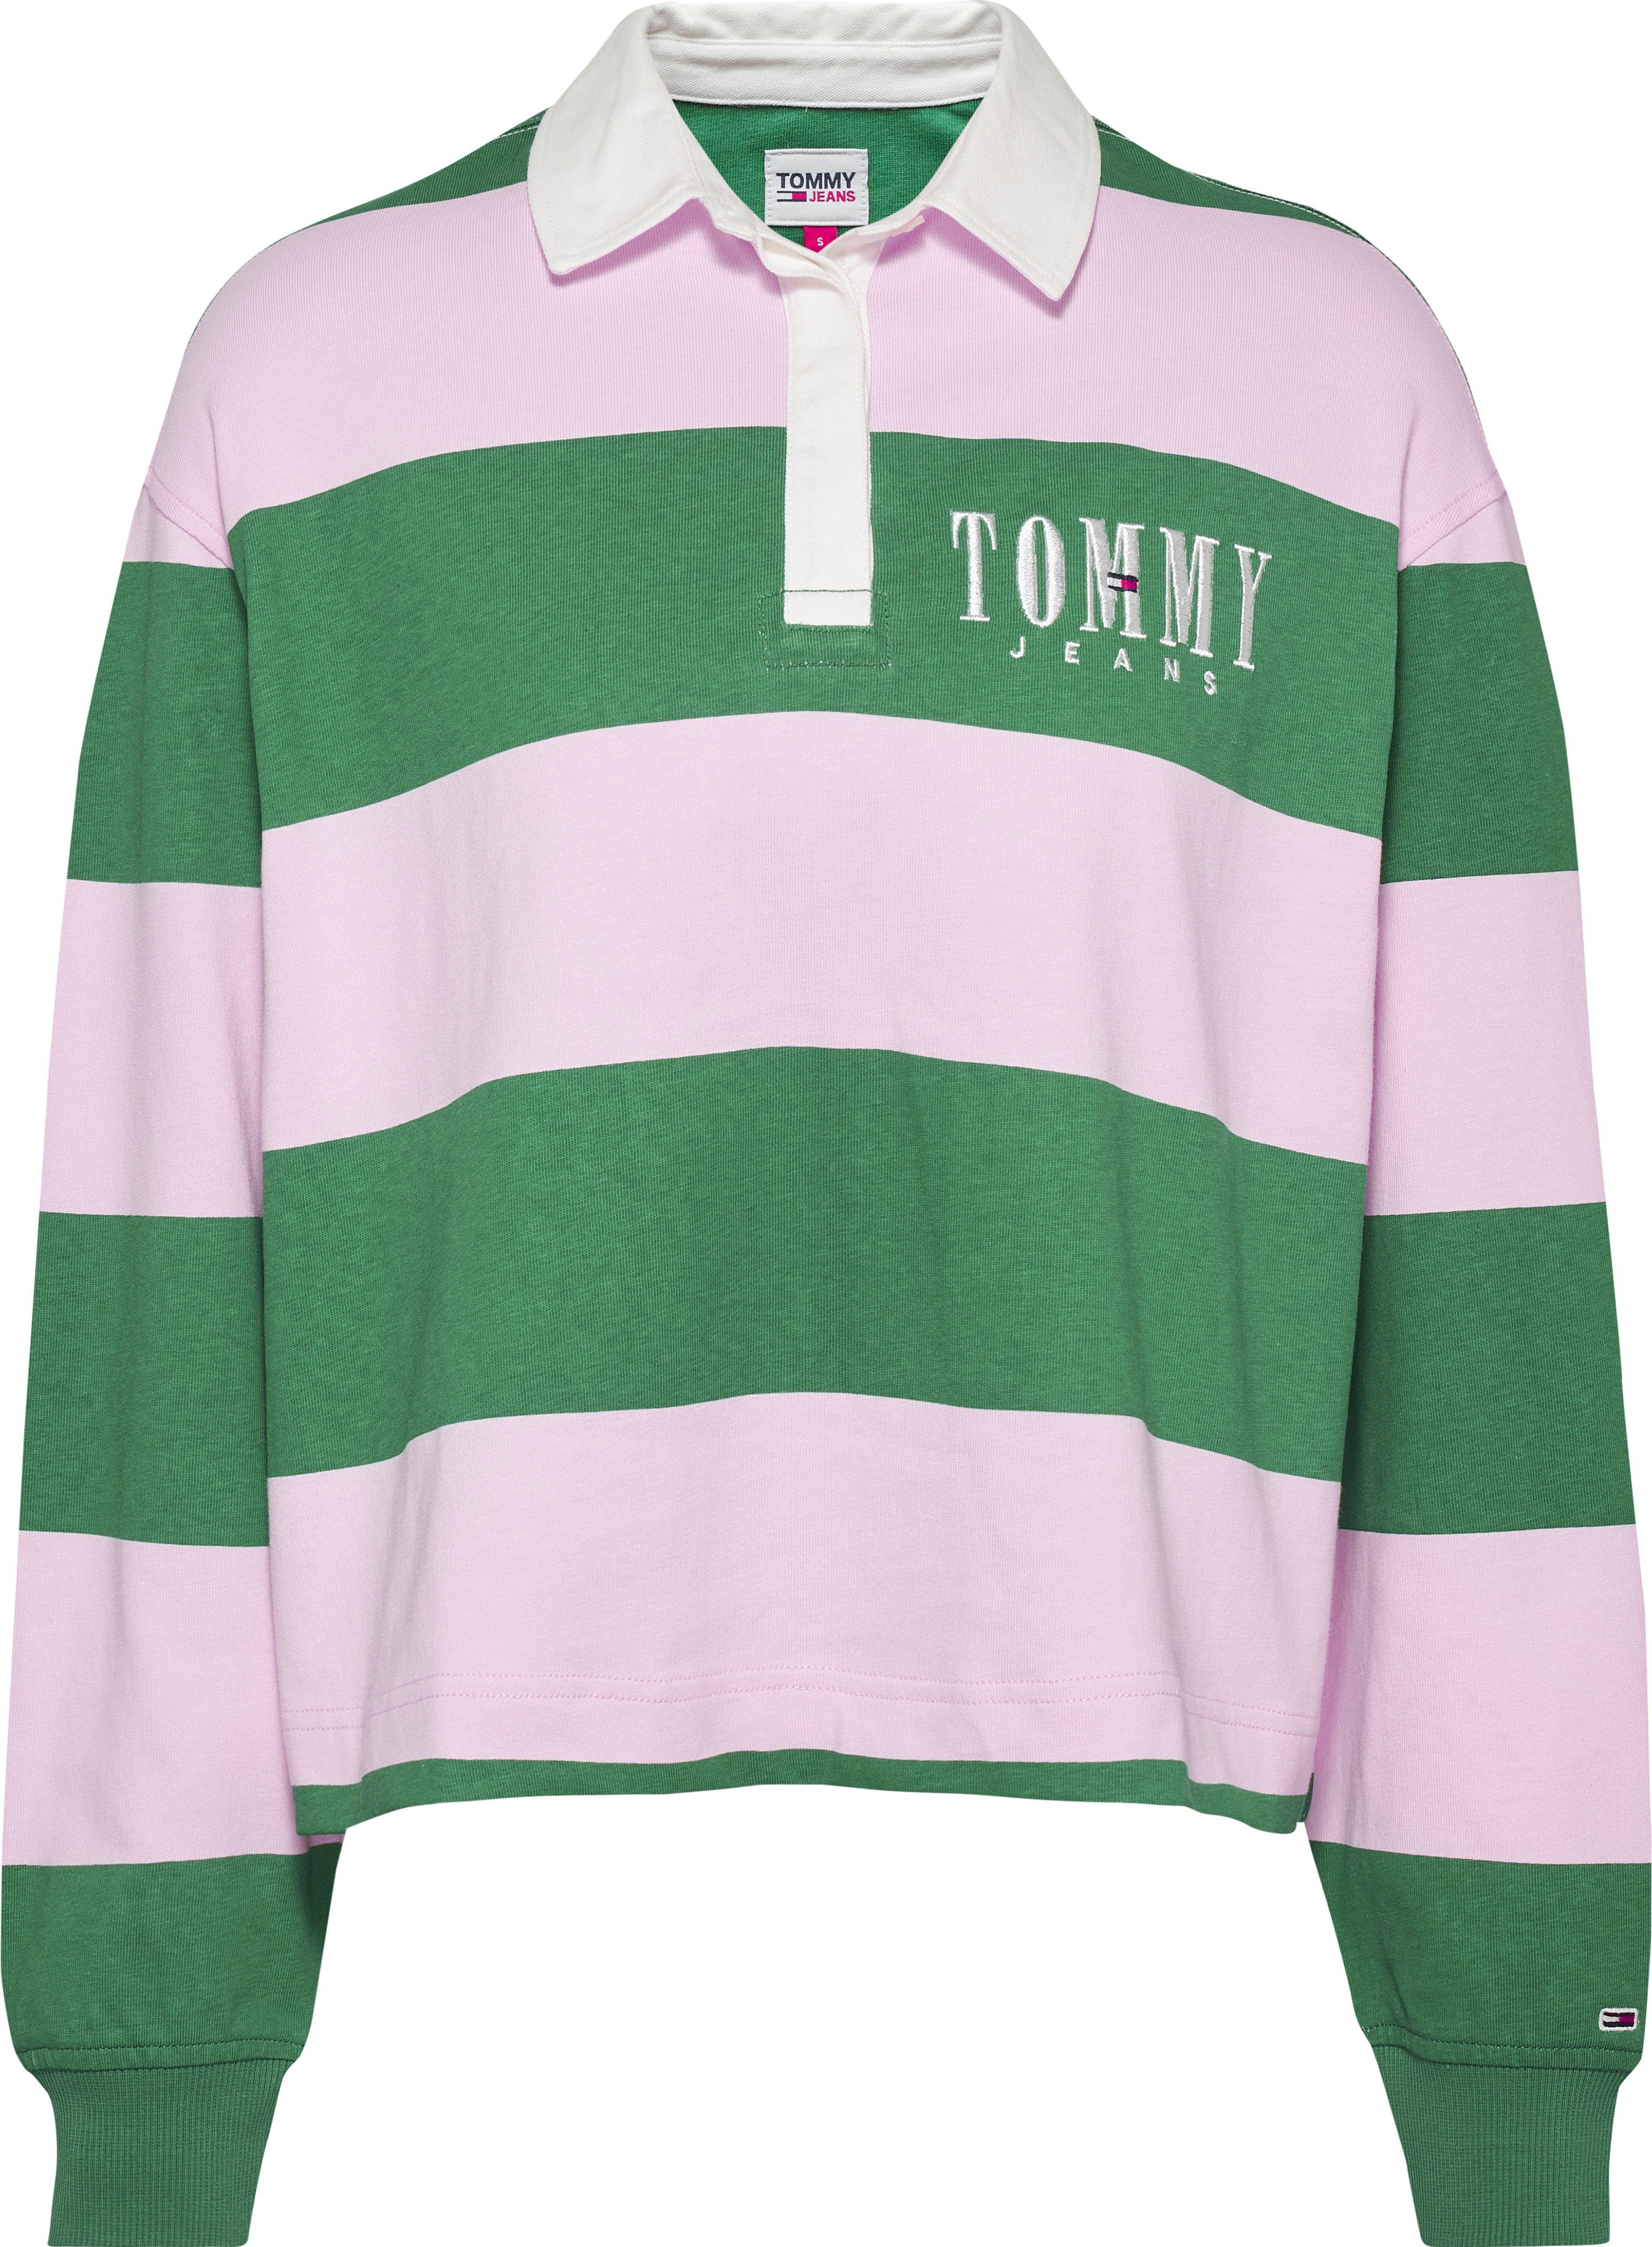 Tommy Hilfiger Damen Polo-Shirts online kaufen | OTTO